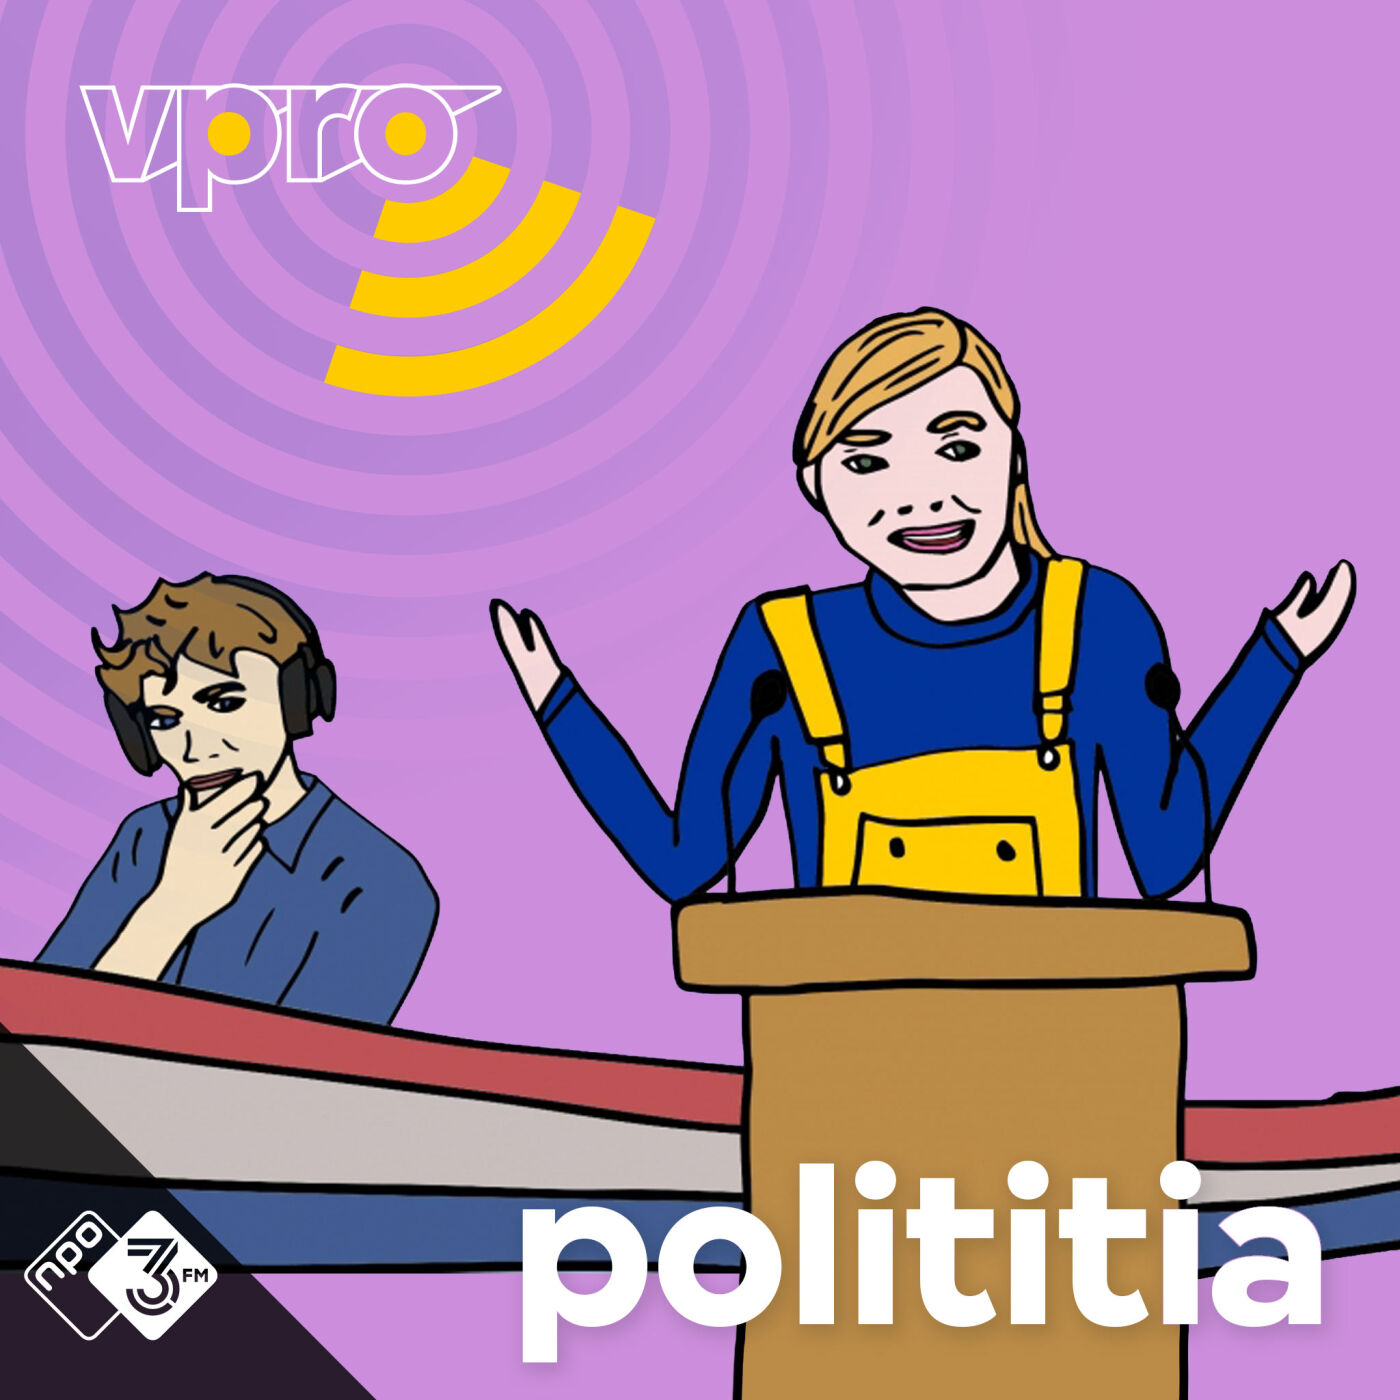 De geillustreerde coverart van de podcast Polititia.